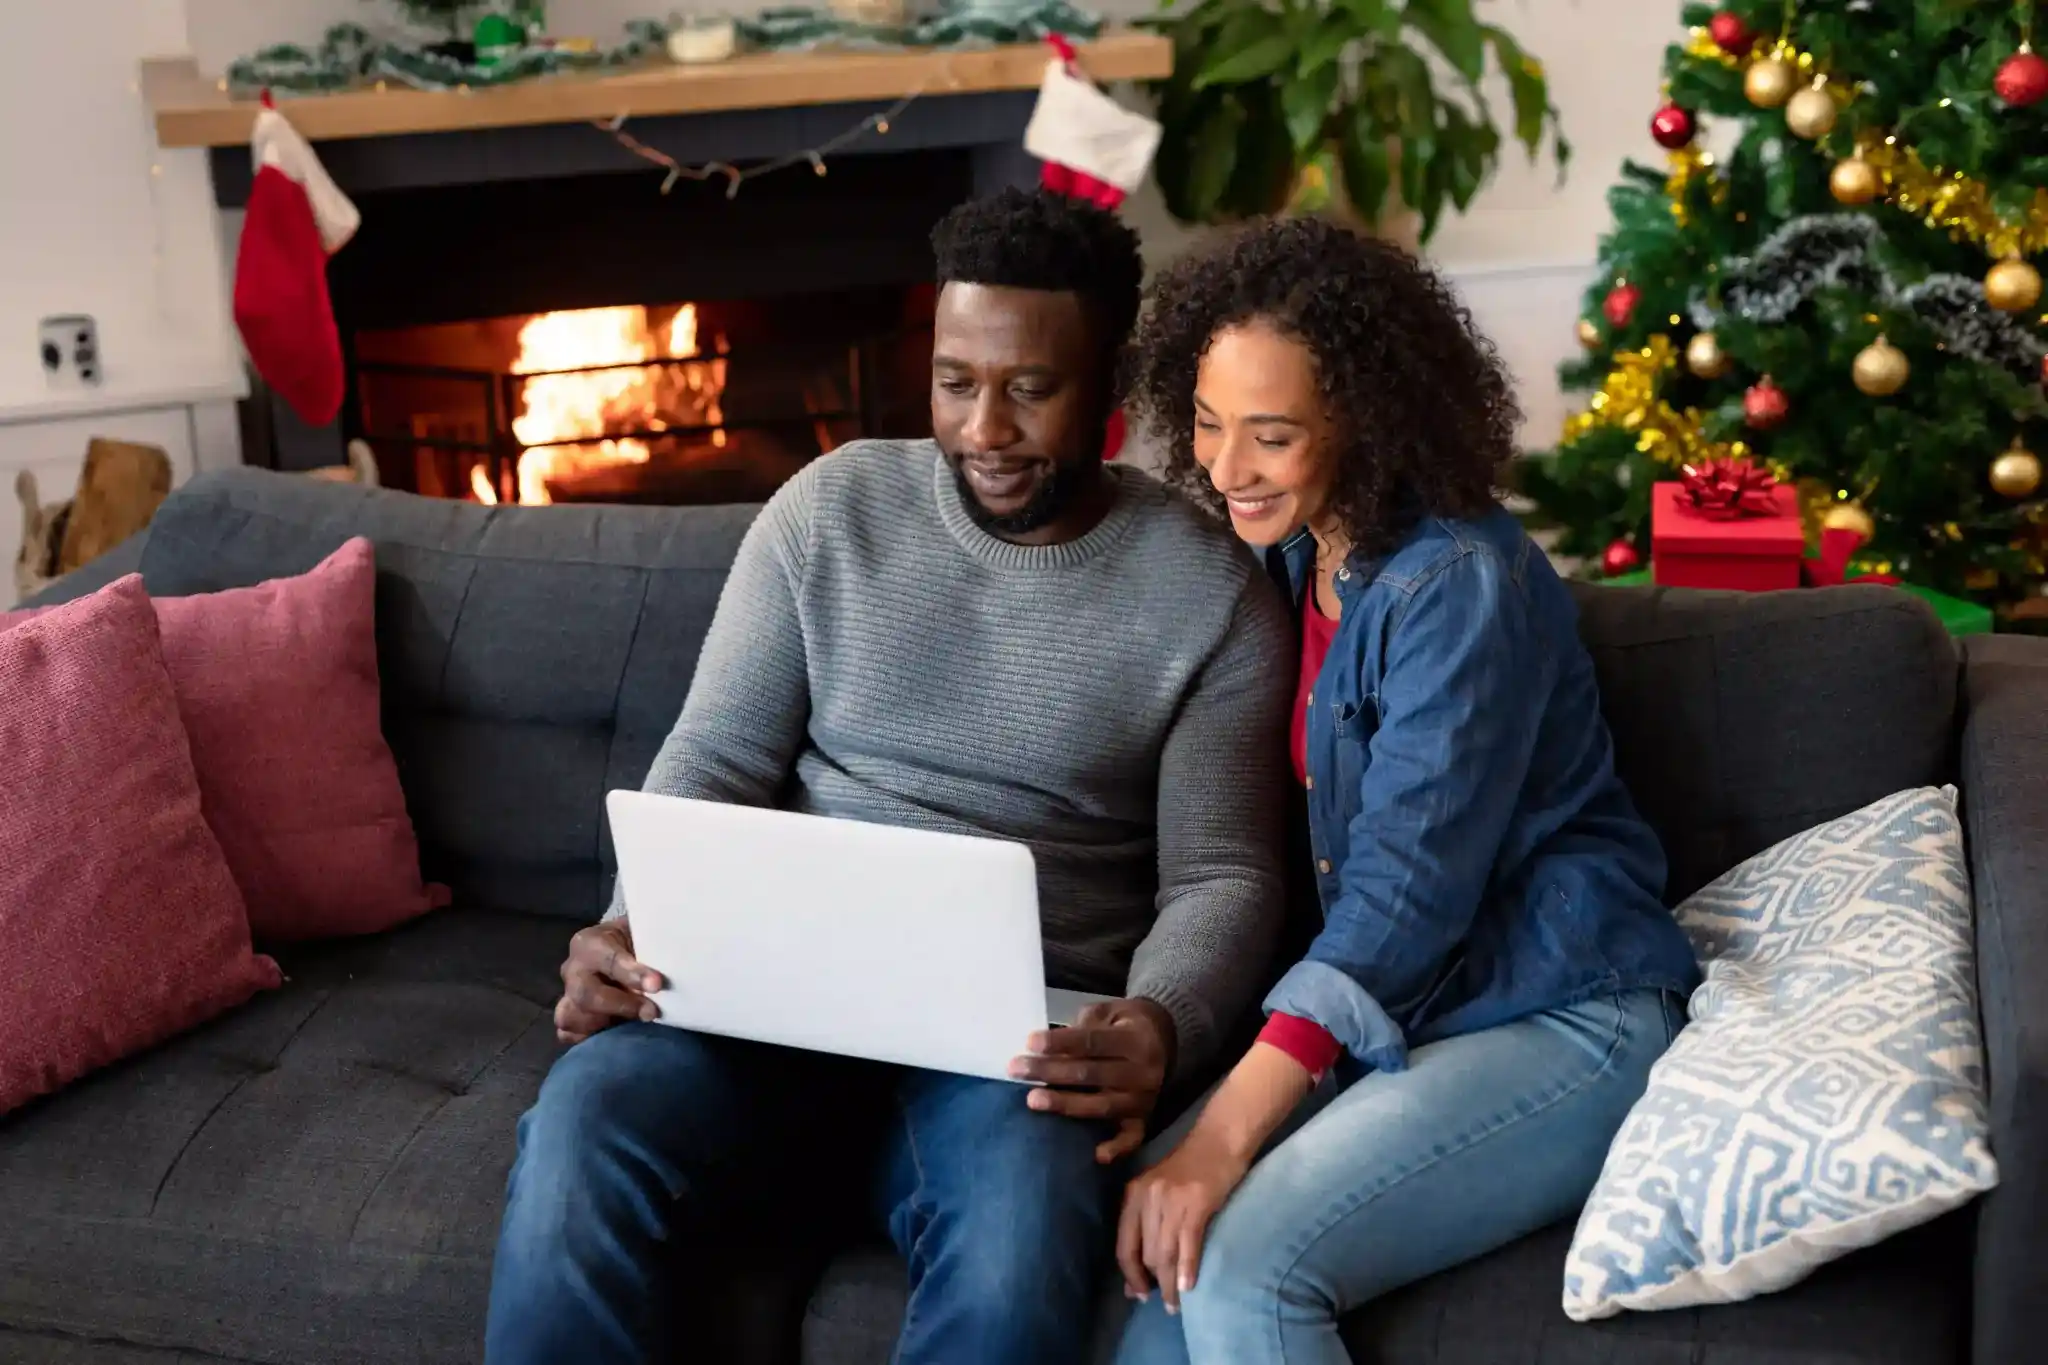 Decorações de Natal: casal sentado no sofá olhando notebook com árvore de natal e decorações natalinas de fundo